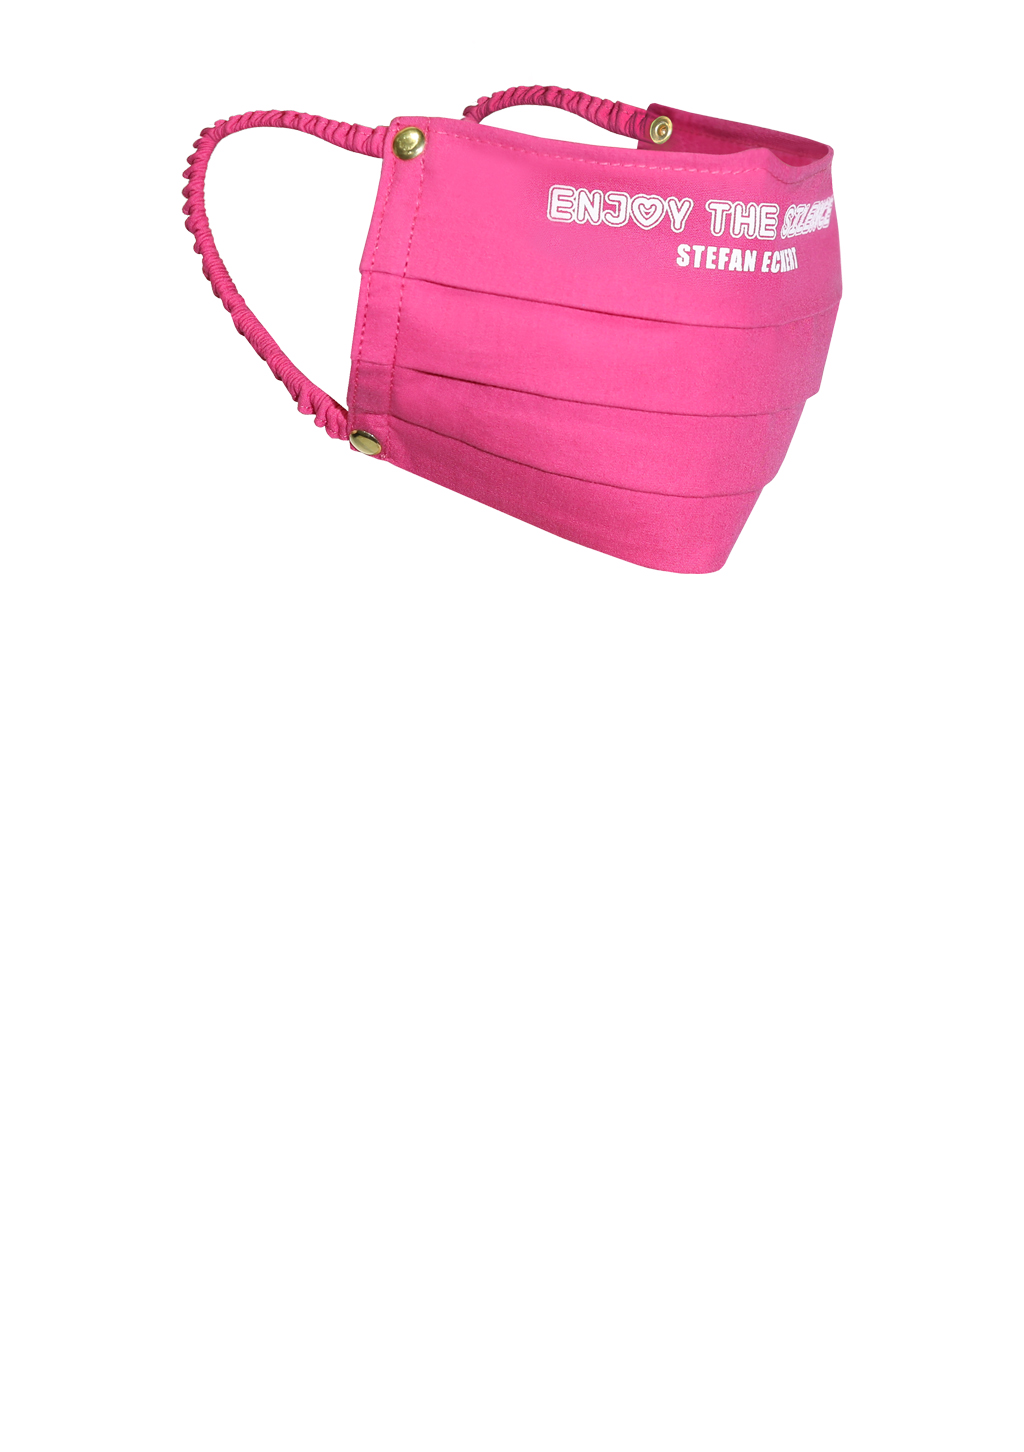 Mundmaske von Designer Stefan Eckert aus Baumwolle in Farbe Pink